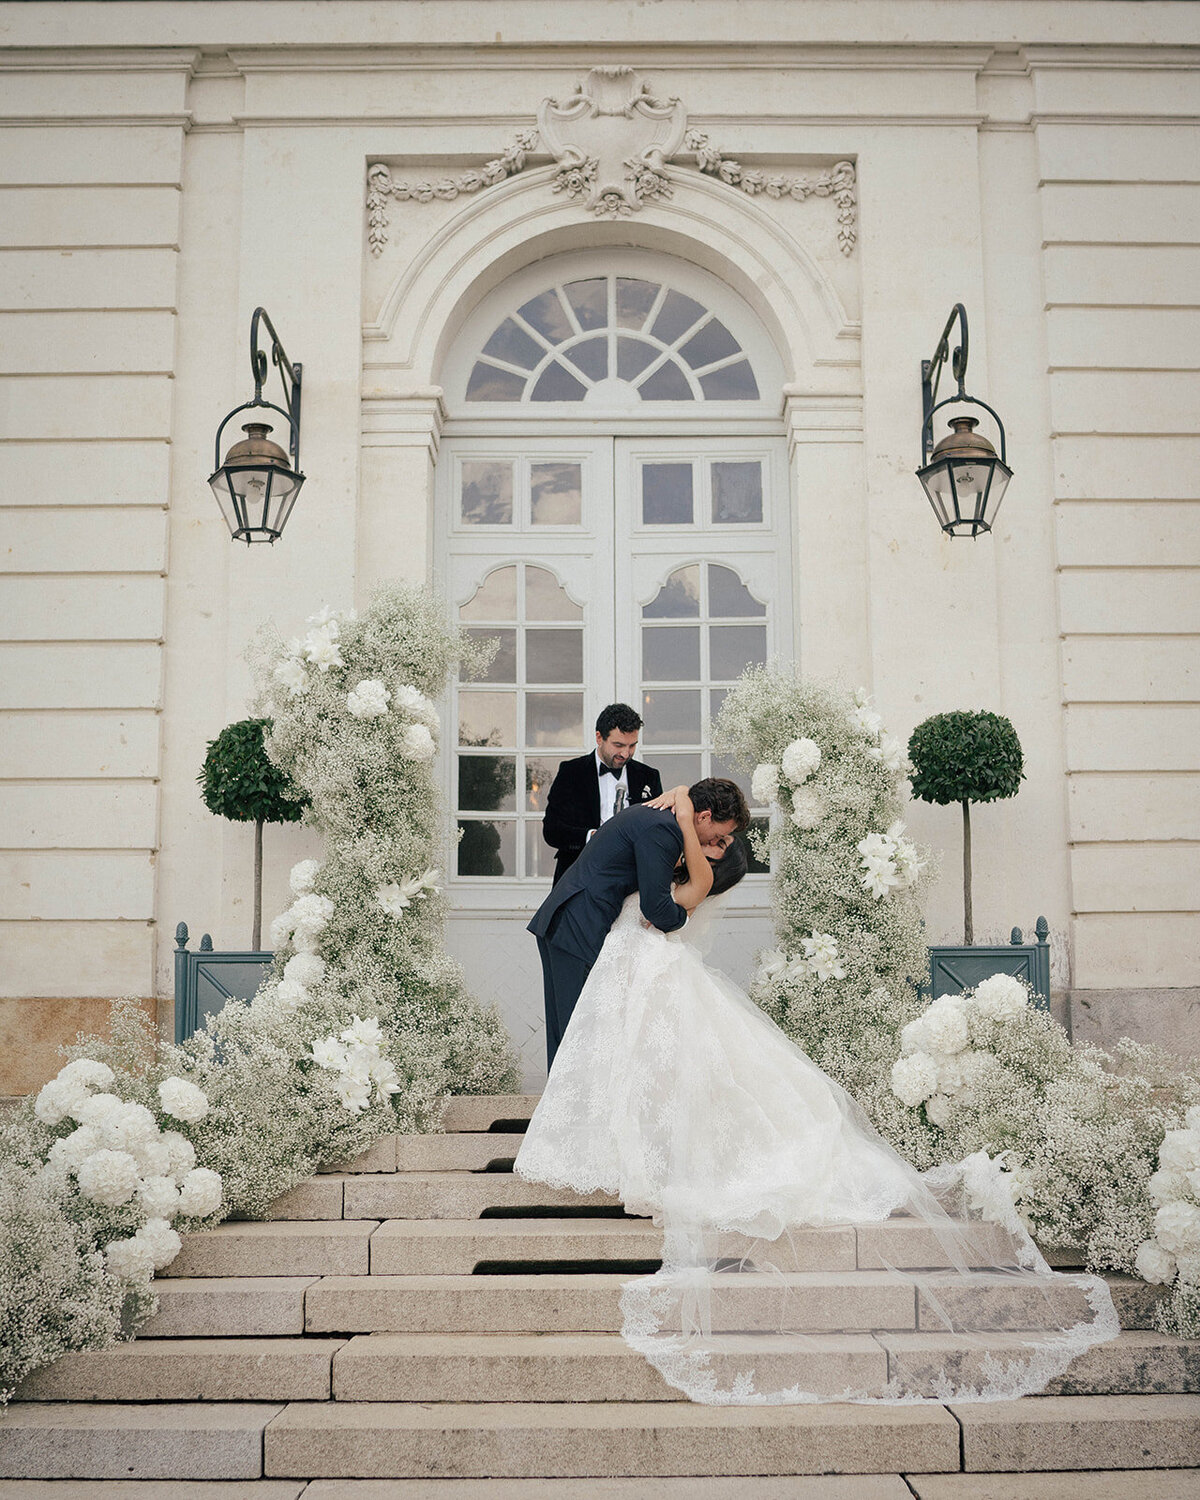 Chateau-du-grand-luce-wedding26